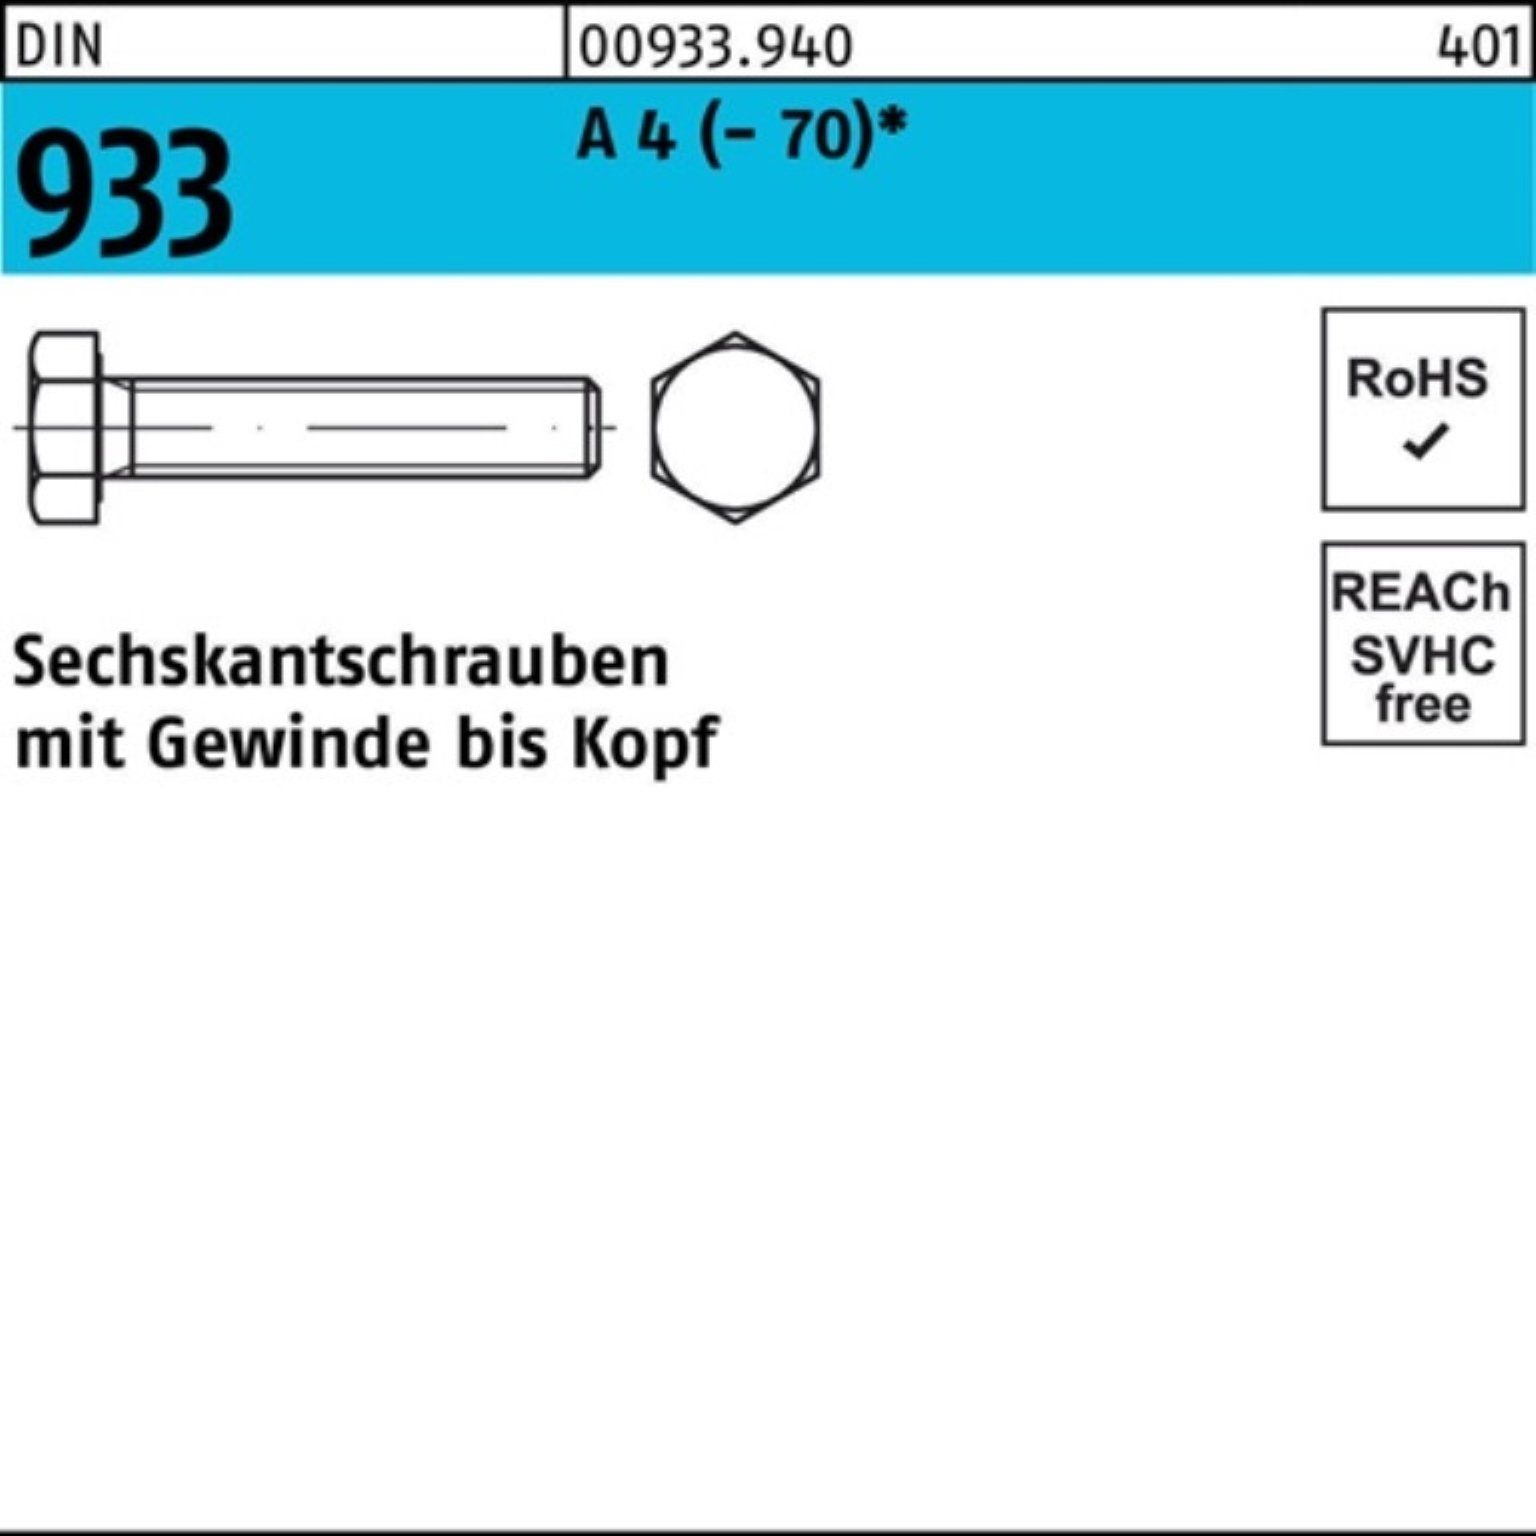 4 Sechskantschraube Reyher DIN A DI Pack Stück Sechskantschraube 933 VG 100er 80 (70) M33x 1